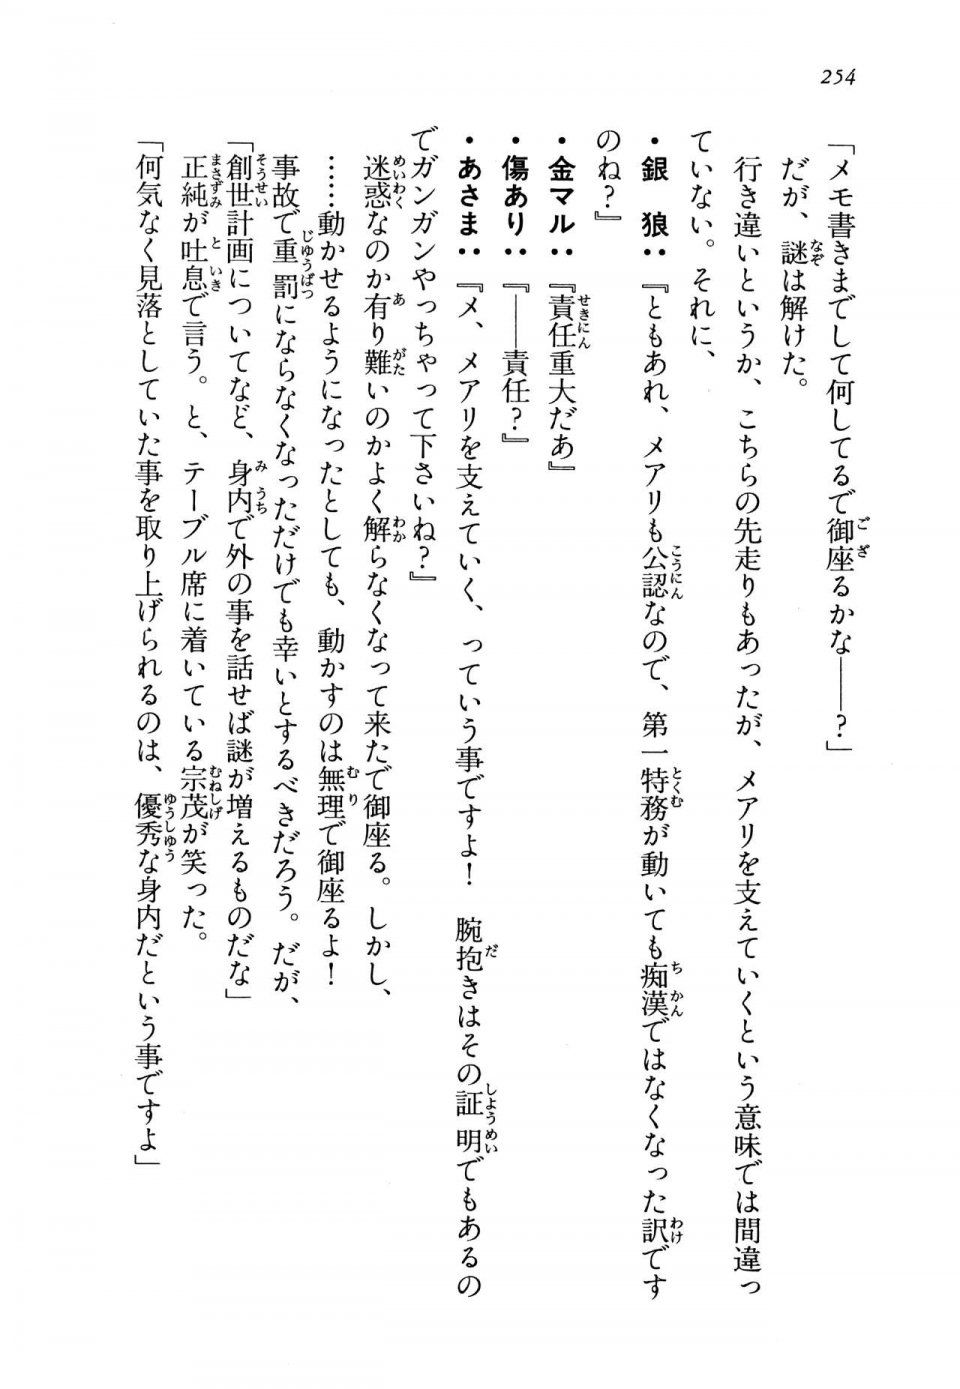 Kyoukai Senjou no Horizon LN Vol 13(6A) - Photo #254